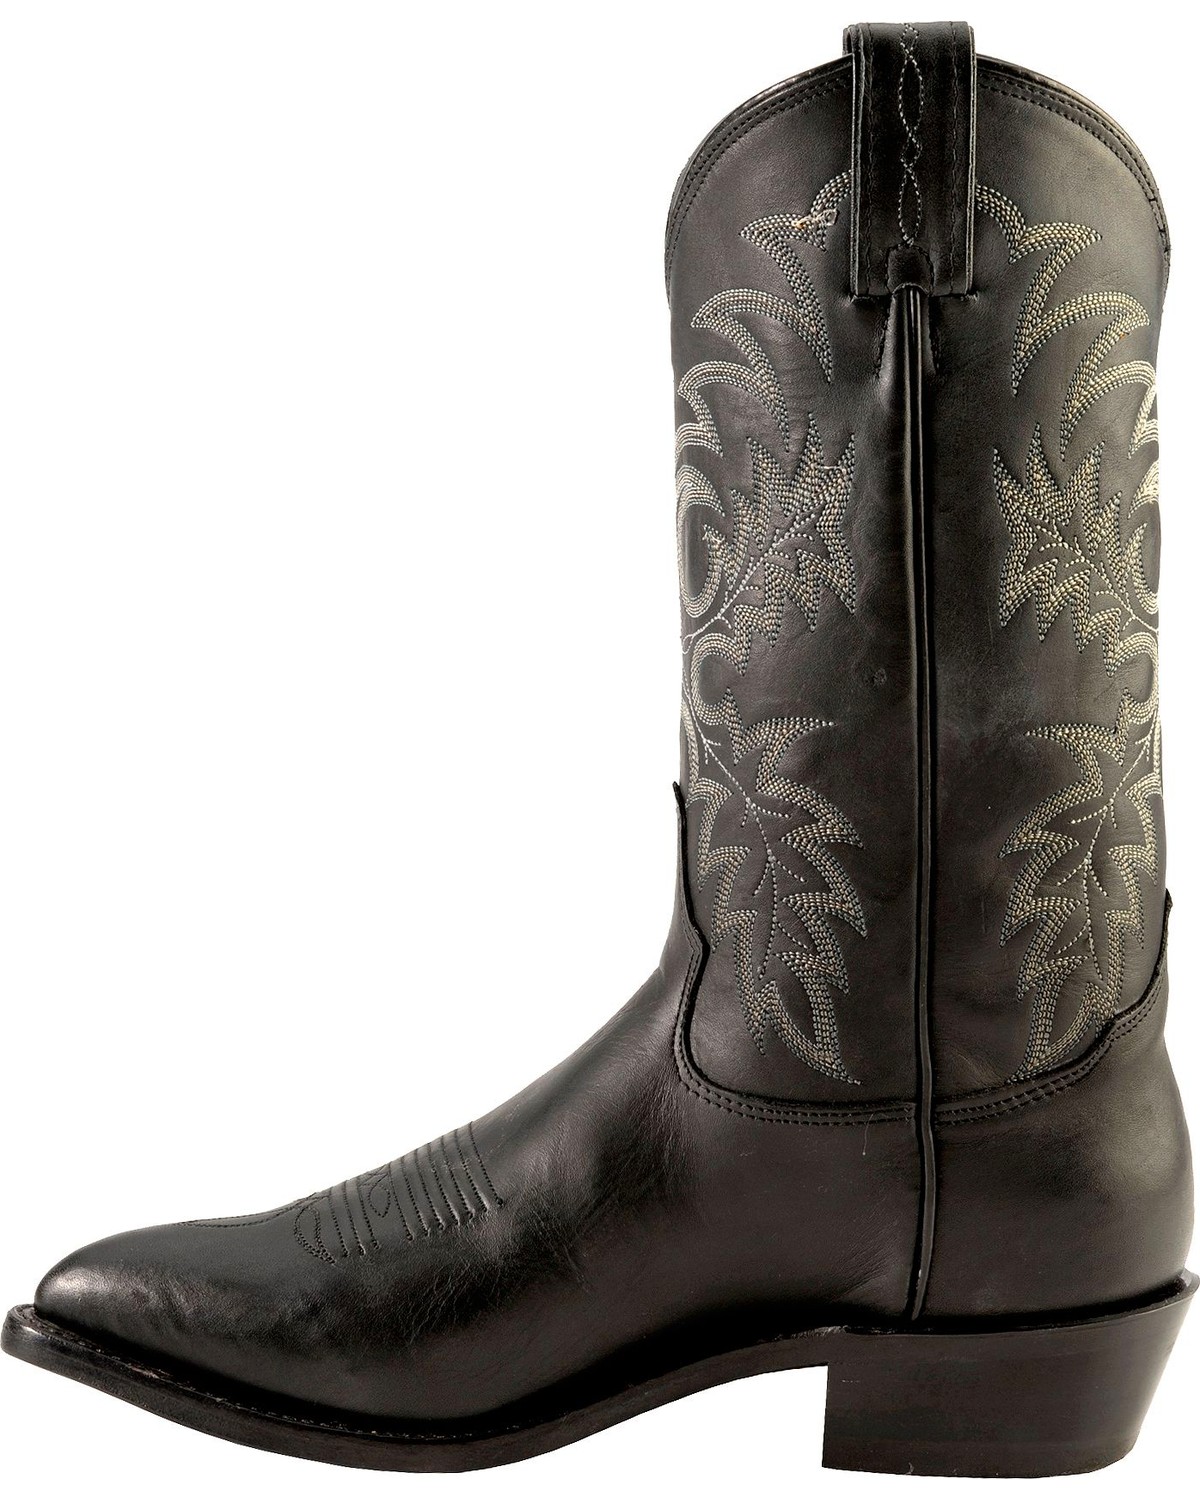 Tony Lama Men's Americana Pointed Toe Western Boots | Boot Barn